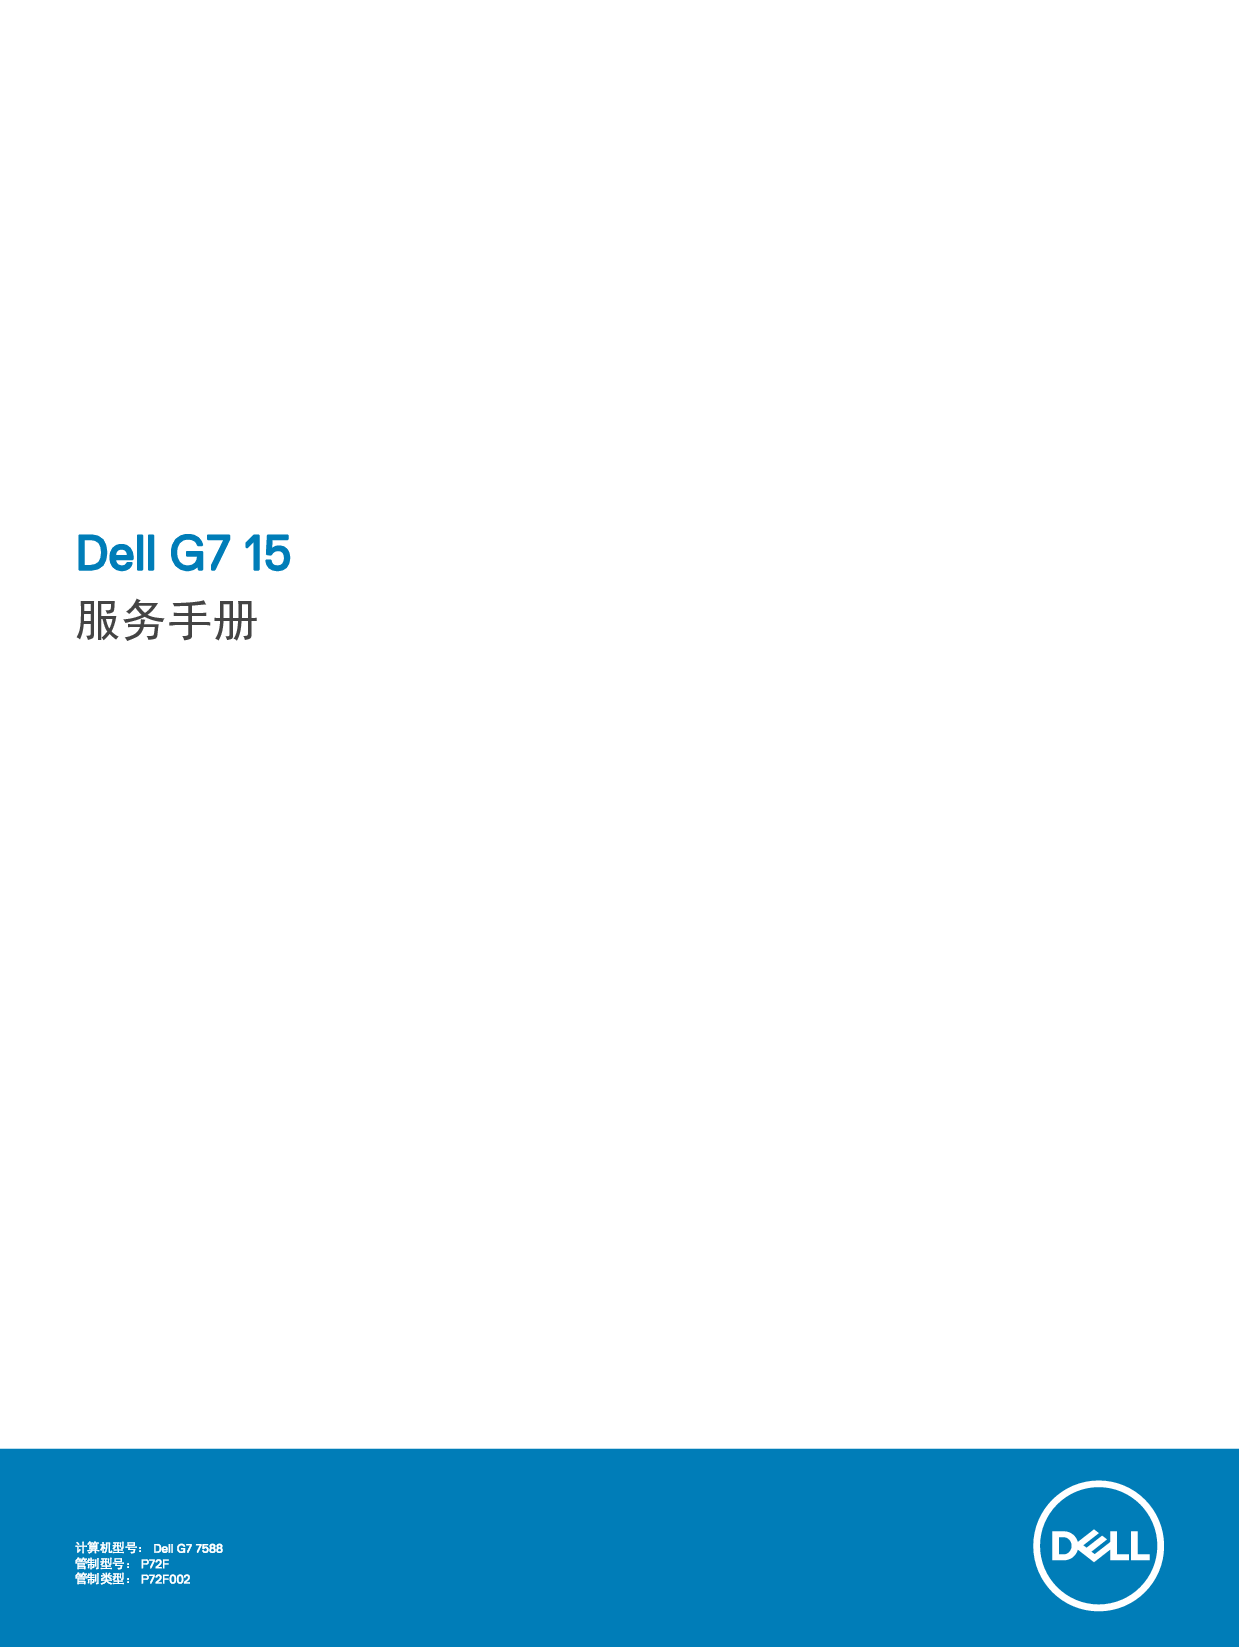 戴尔 Dell G7 15 7588 维修服务手册 封面